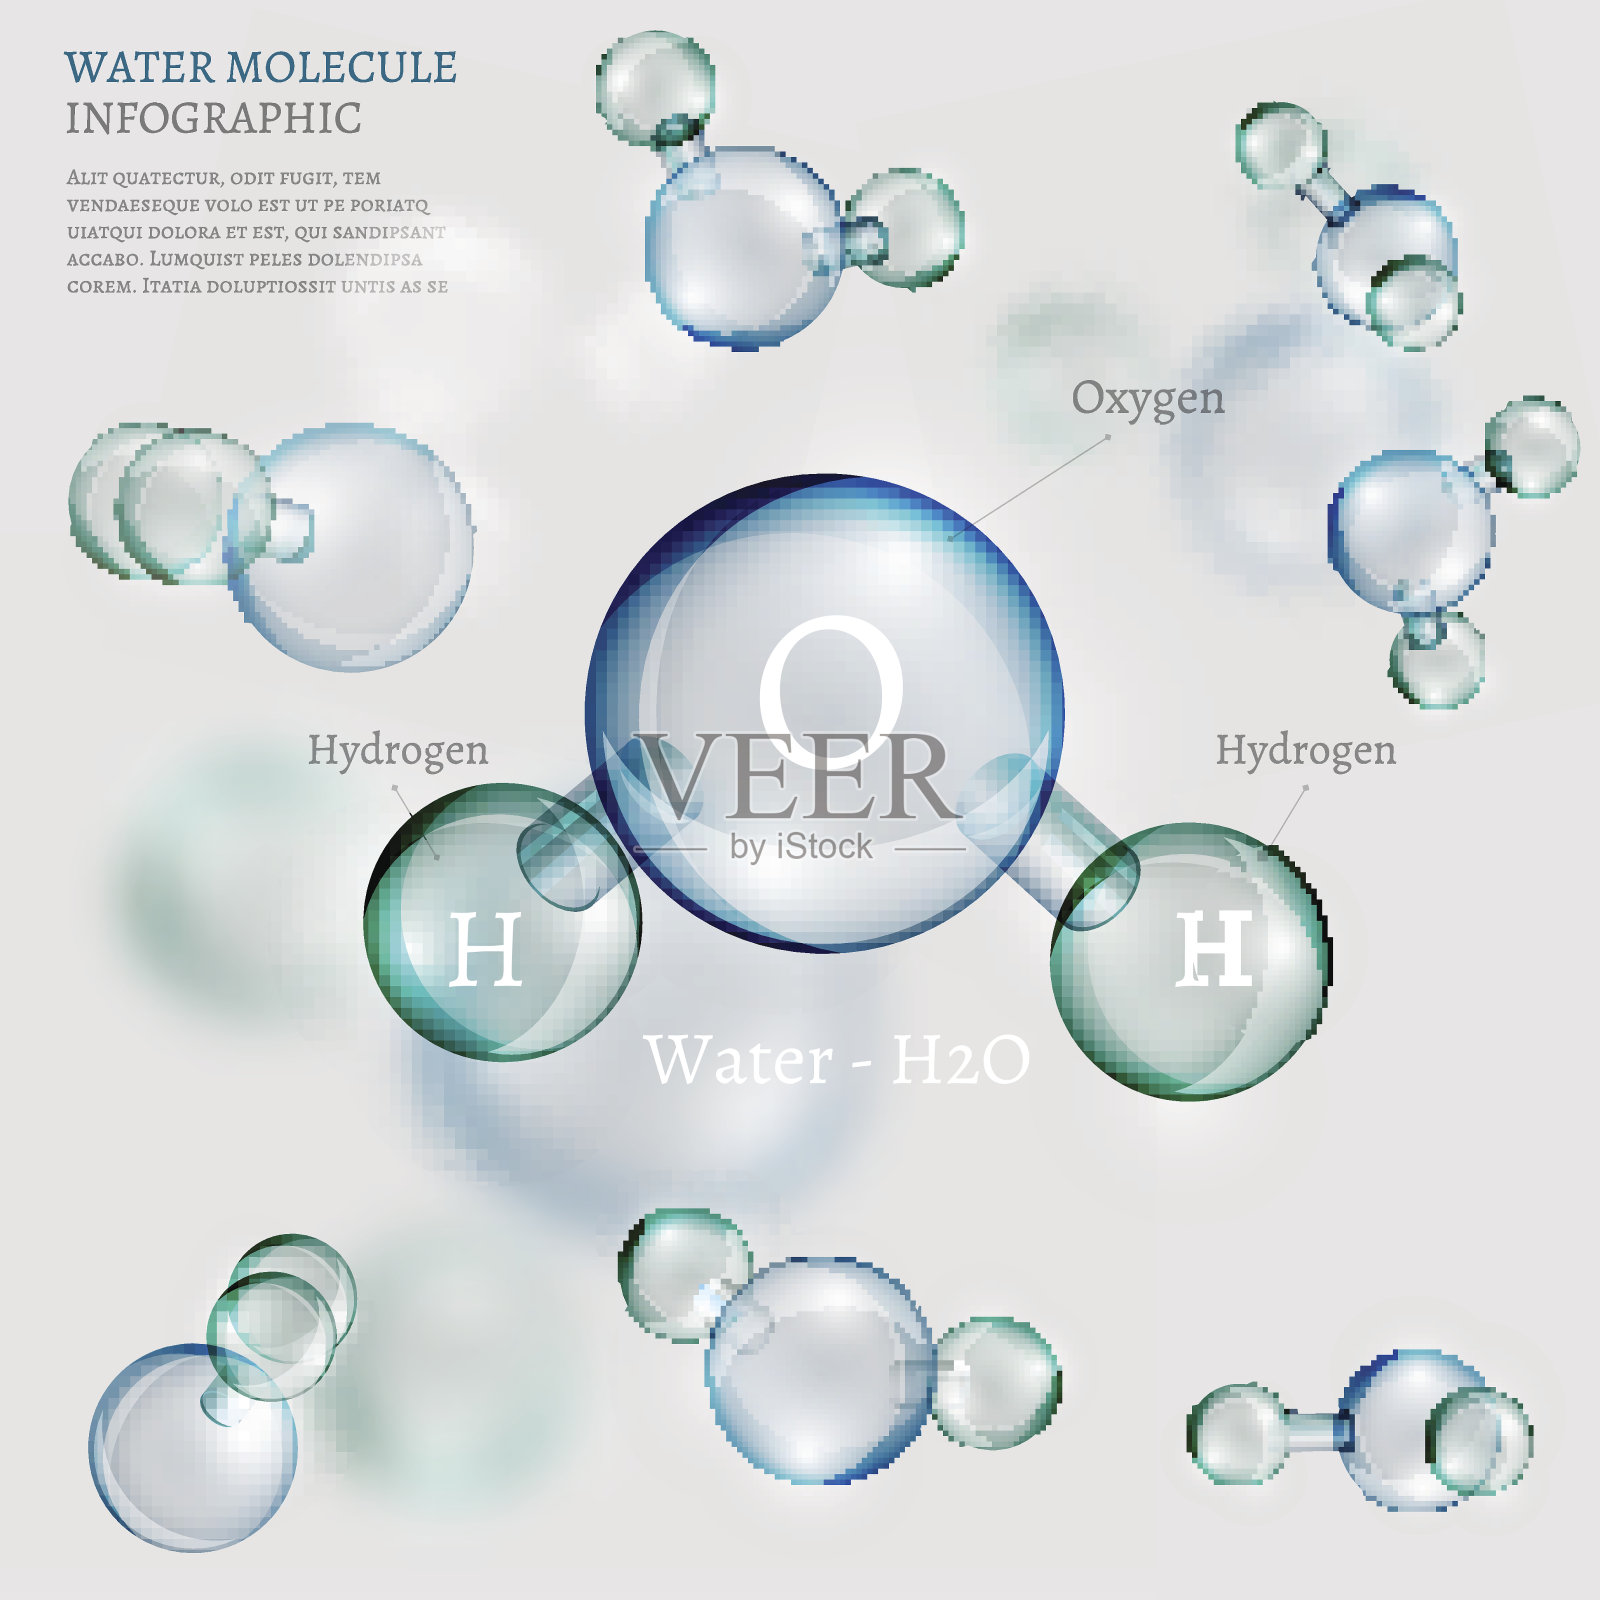 水分子设计元素图片